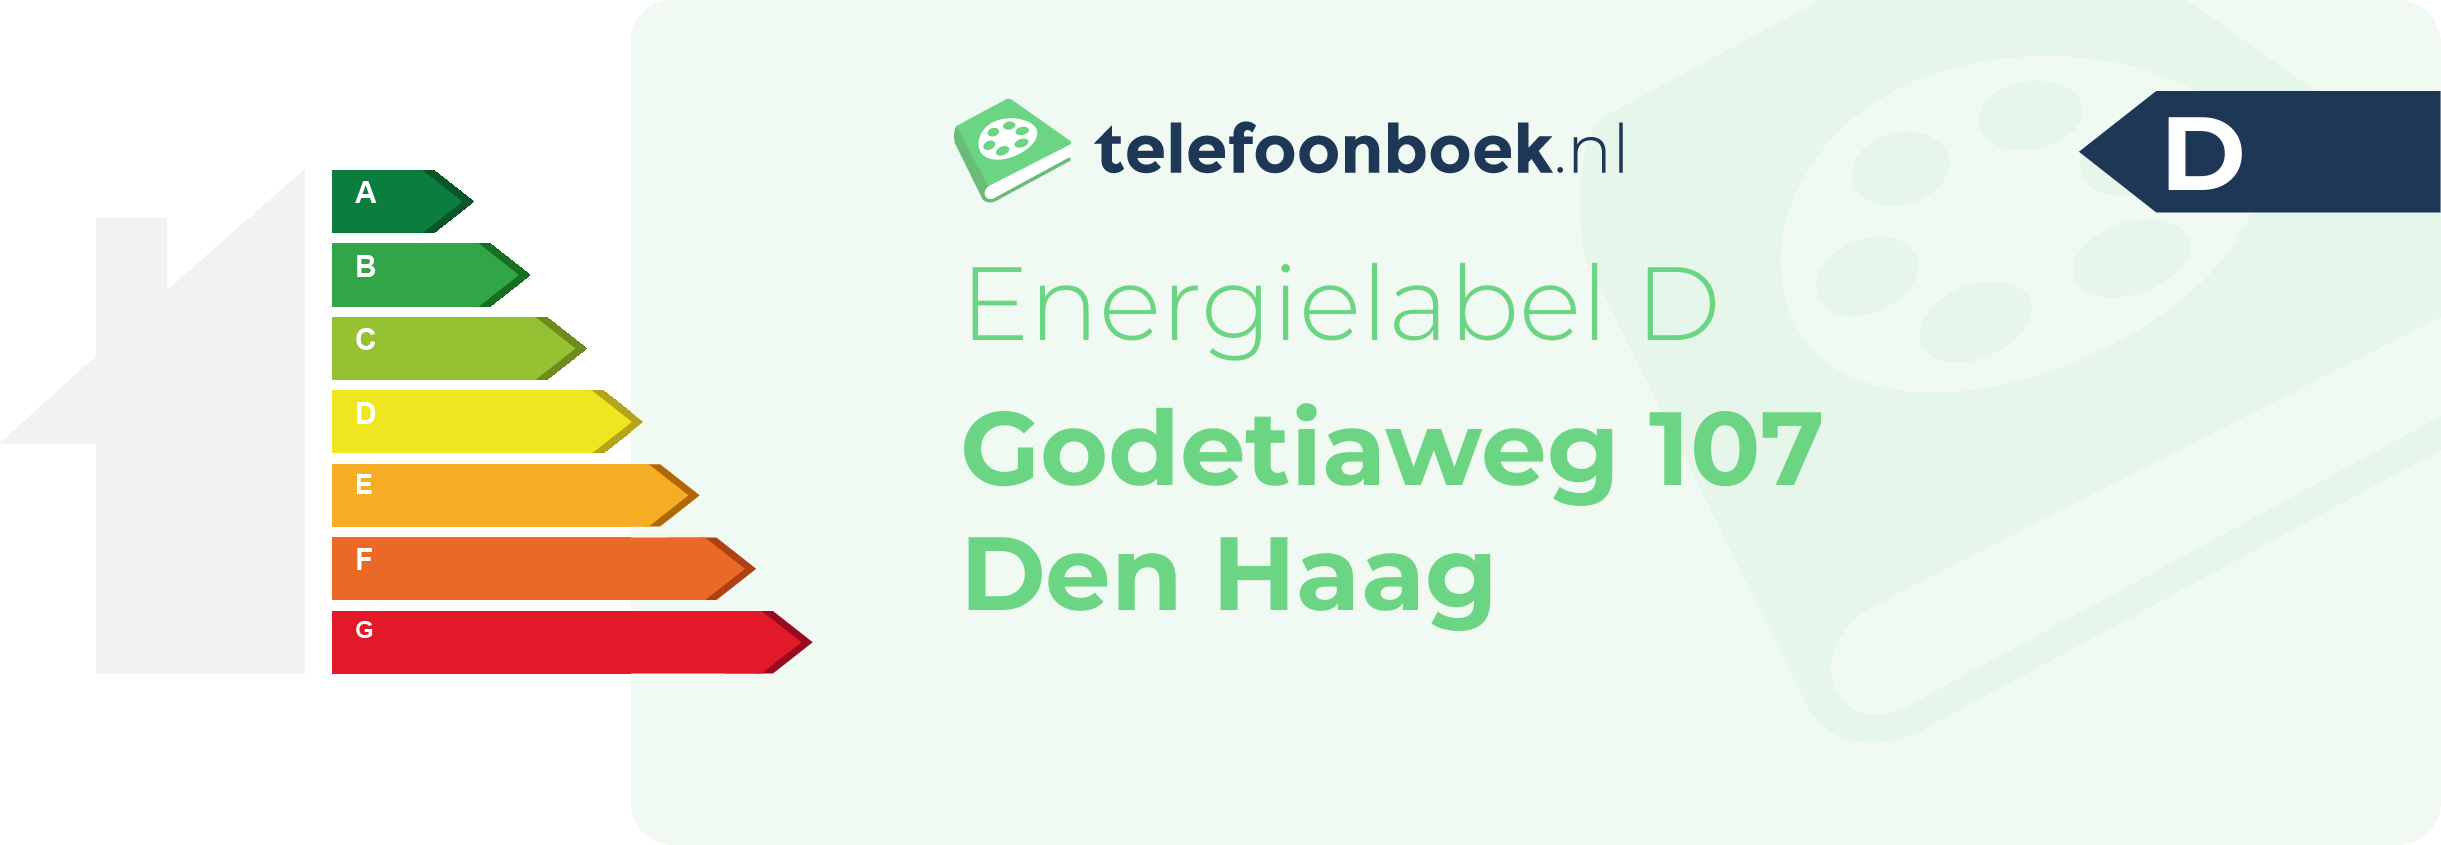 Energielabel Godetiaweg 107 Den Haag